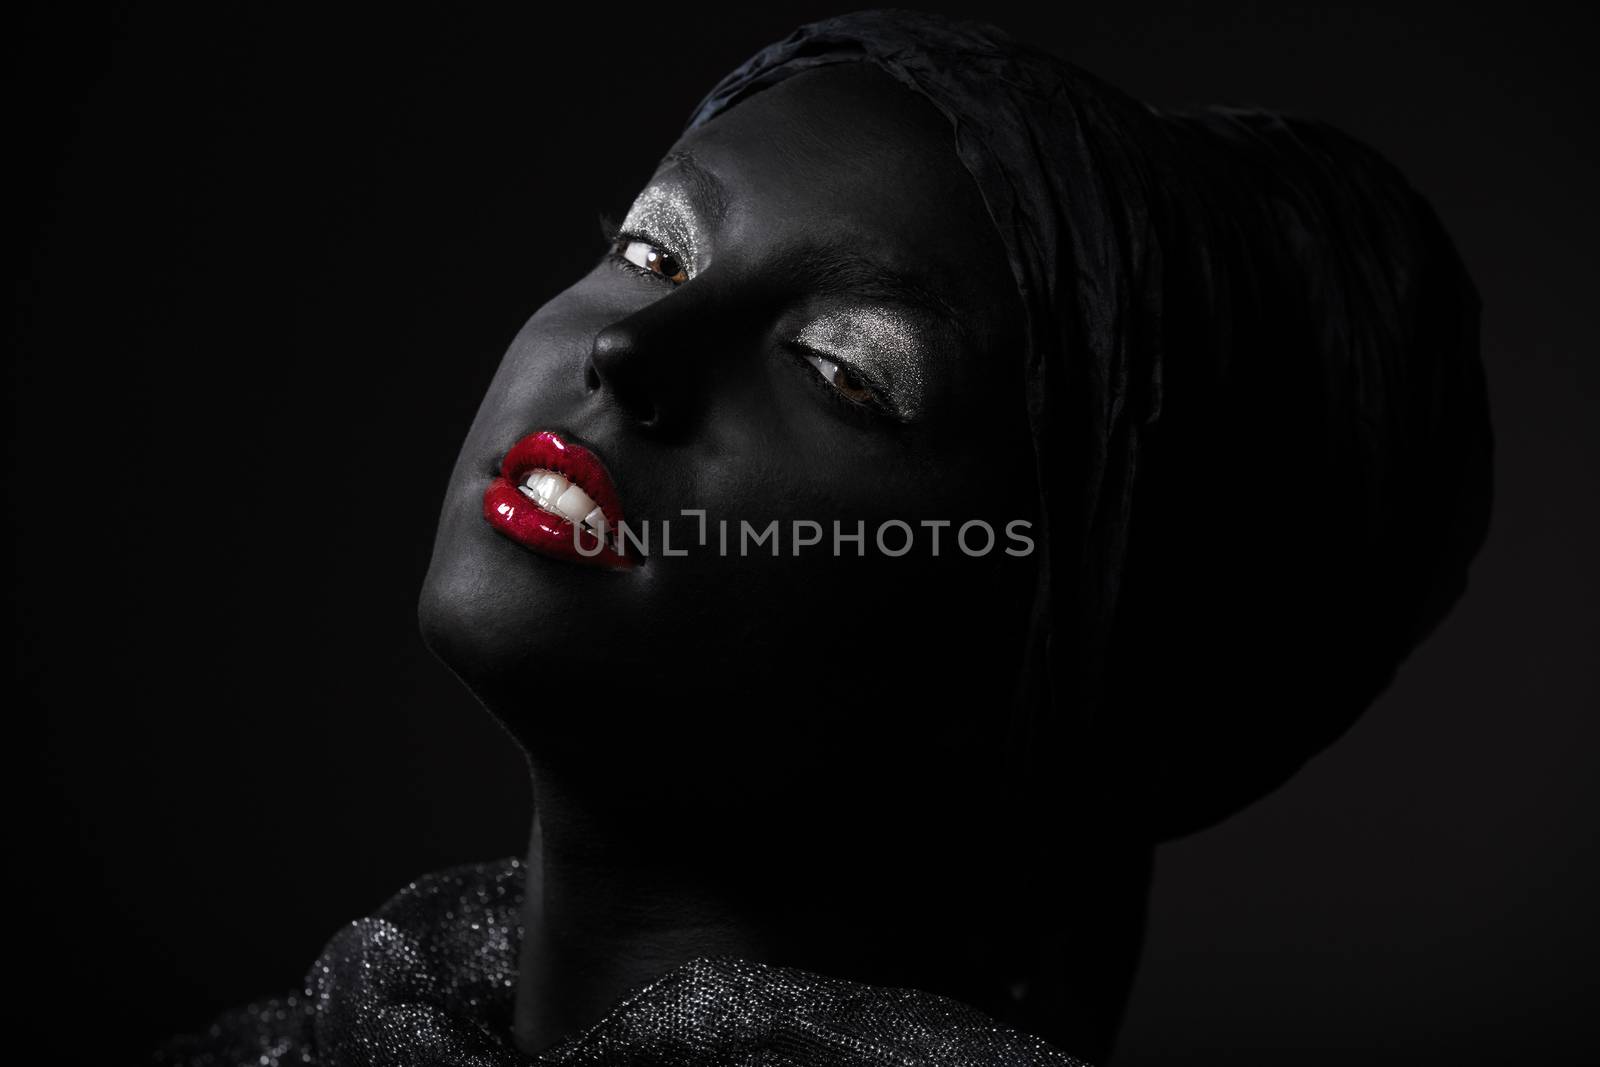 Black beauty by Novic